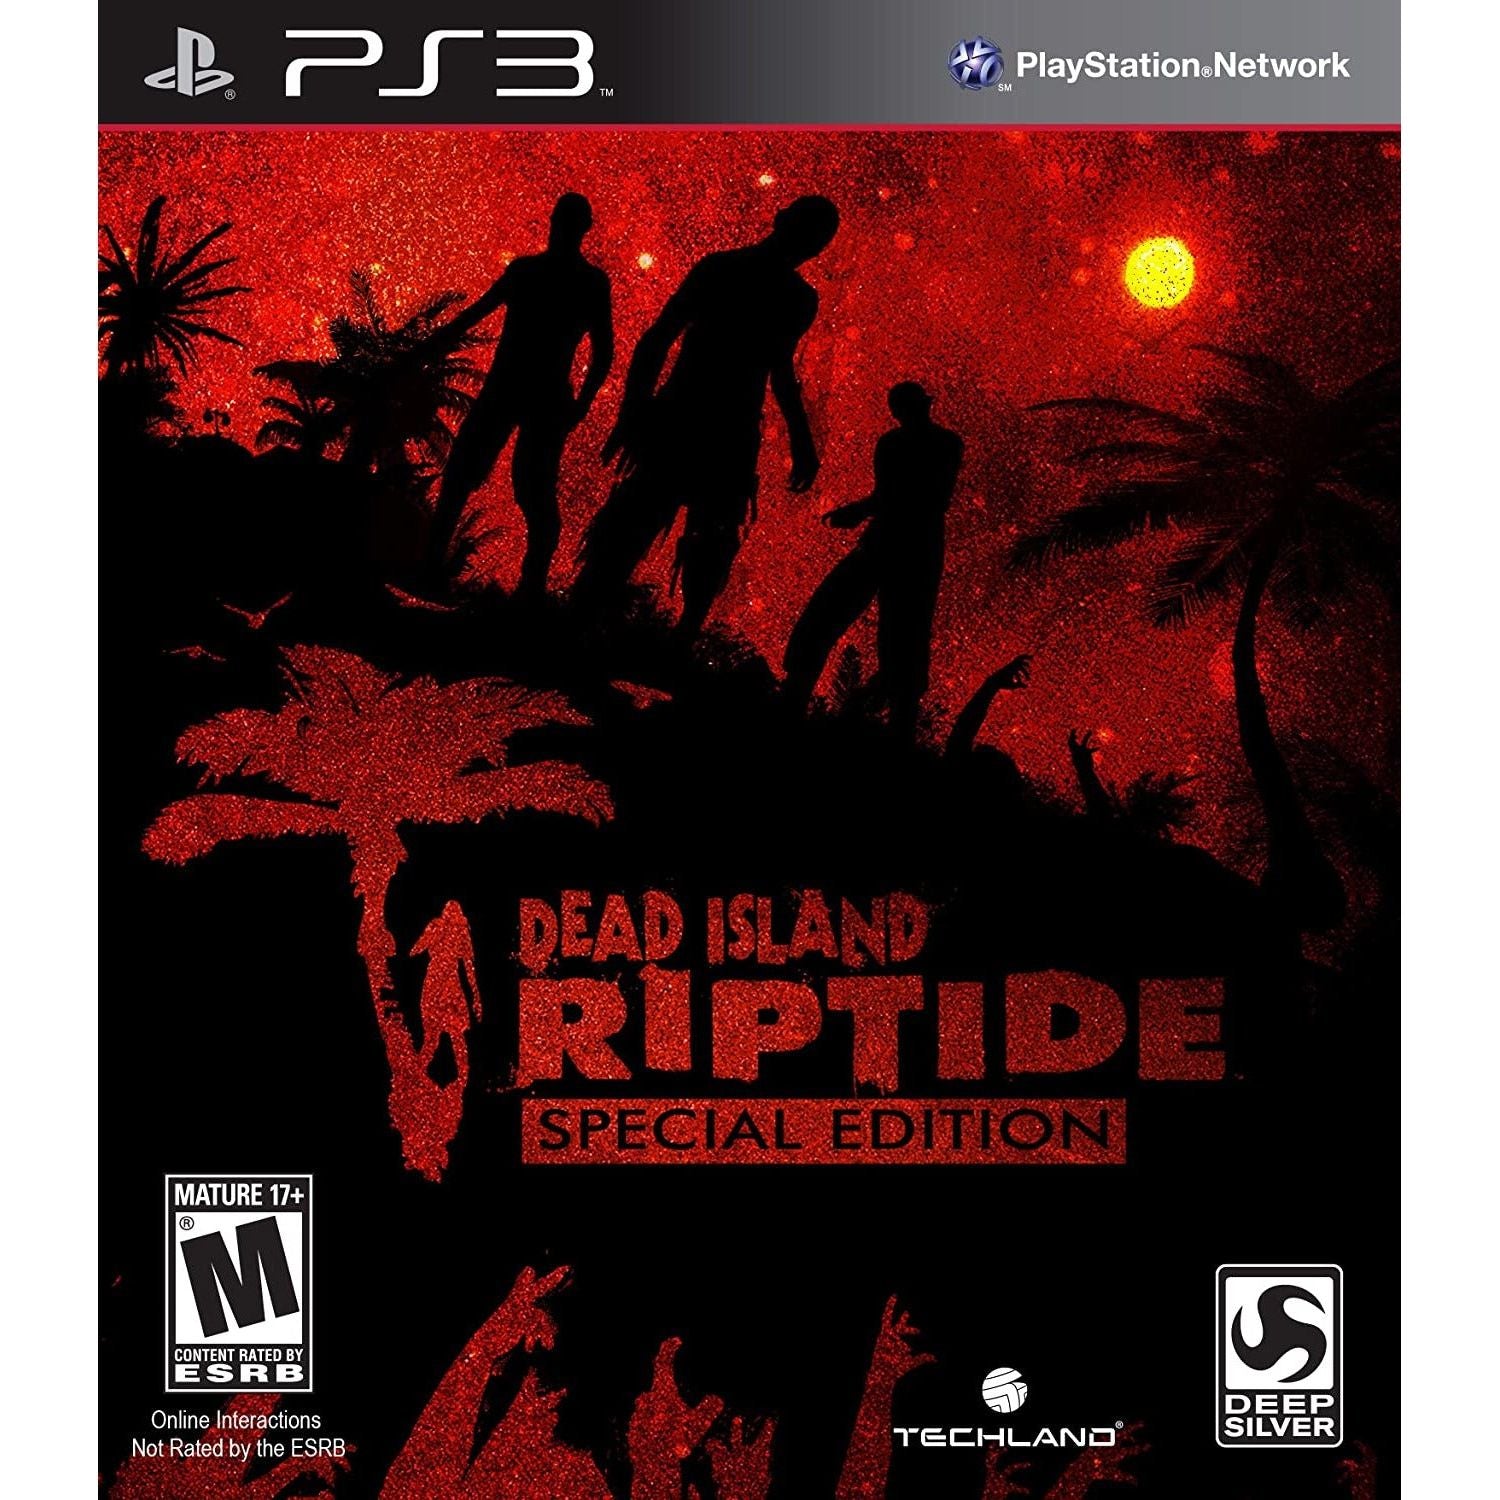 PS3 - Dead Island Riptide Special Edition (No Codes)